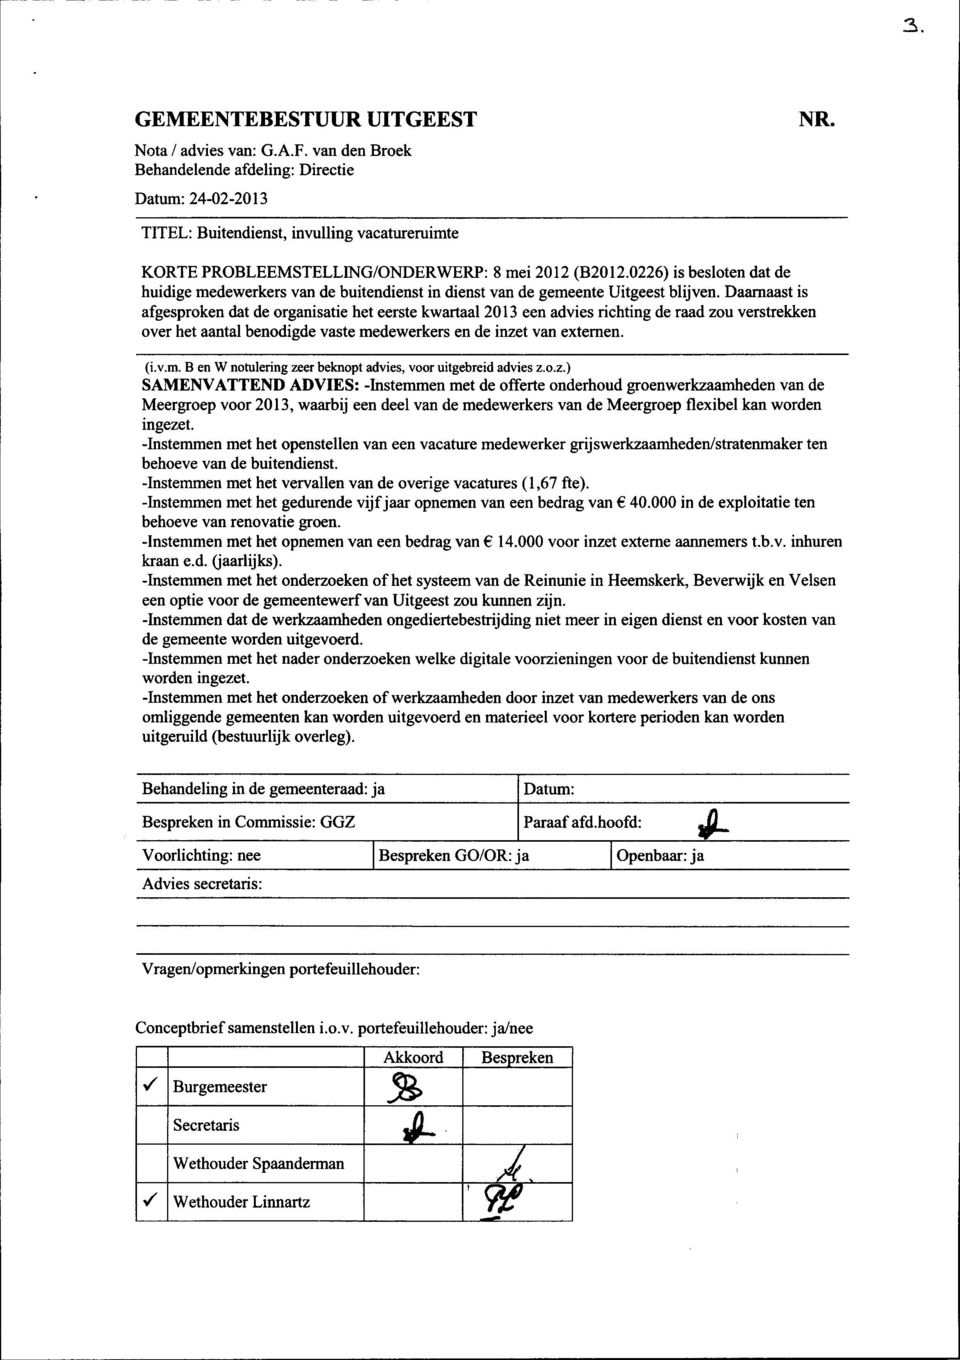 0226) is besloten dat de huidige medewerkers van de buitendienst in dienst van de gemeente Uitgeest blijven.